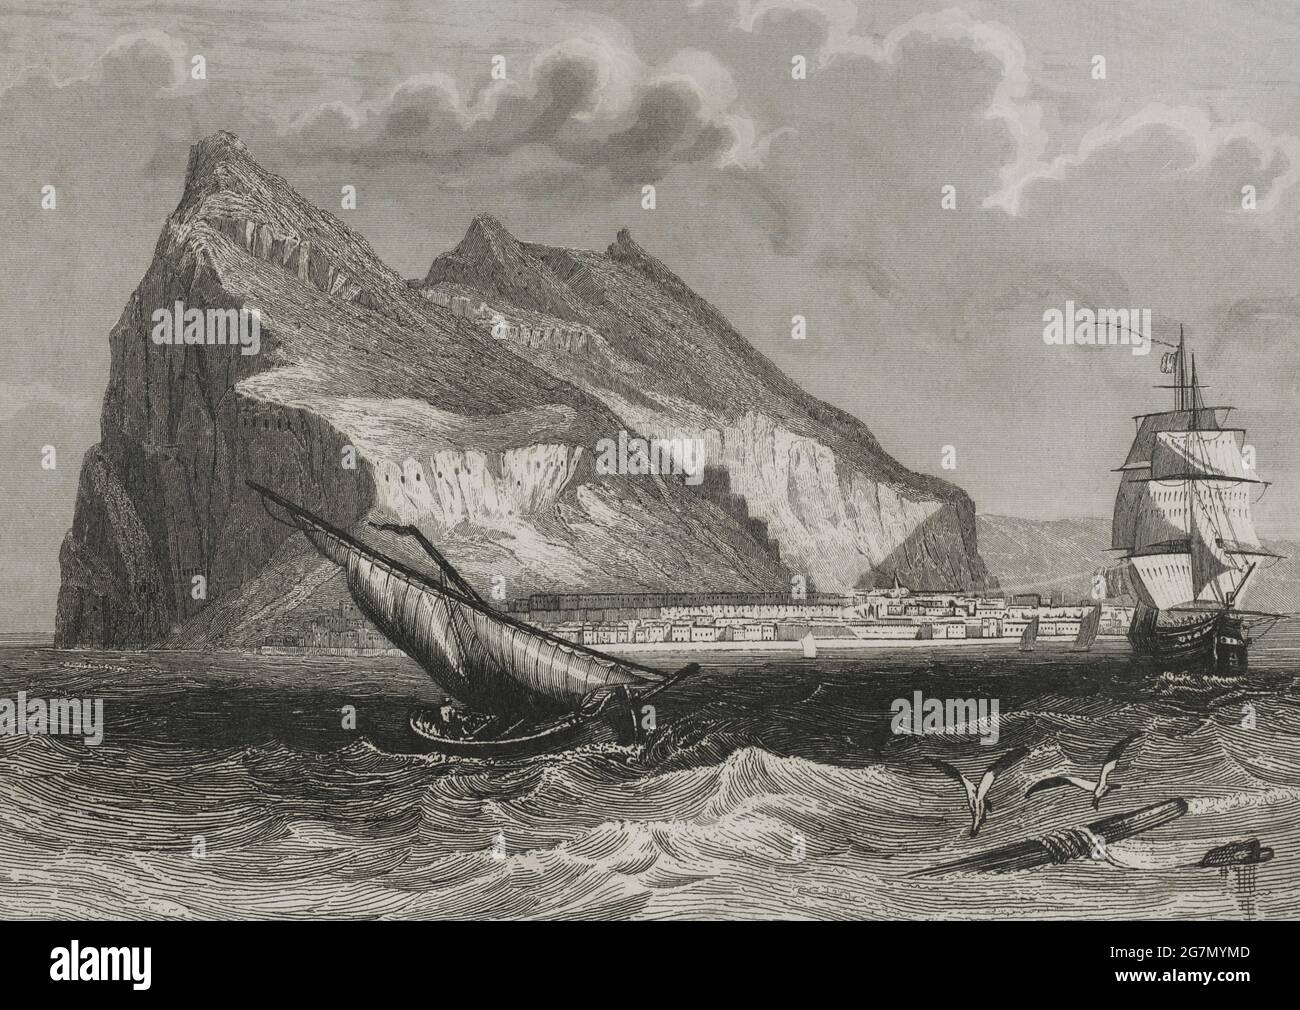 Gibraltar. General view. Engraving by Antonio Roca Sallent. Las Glorias Nacionales, 1853. Author: Antonio Roca Sallent (1813-1864). Spanish engraver. Stock Photo